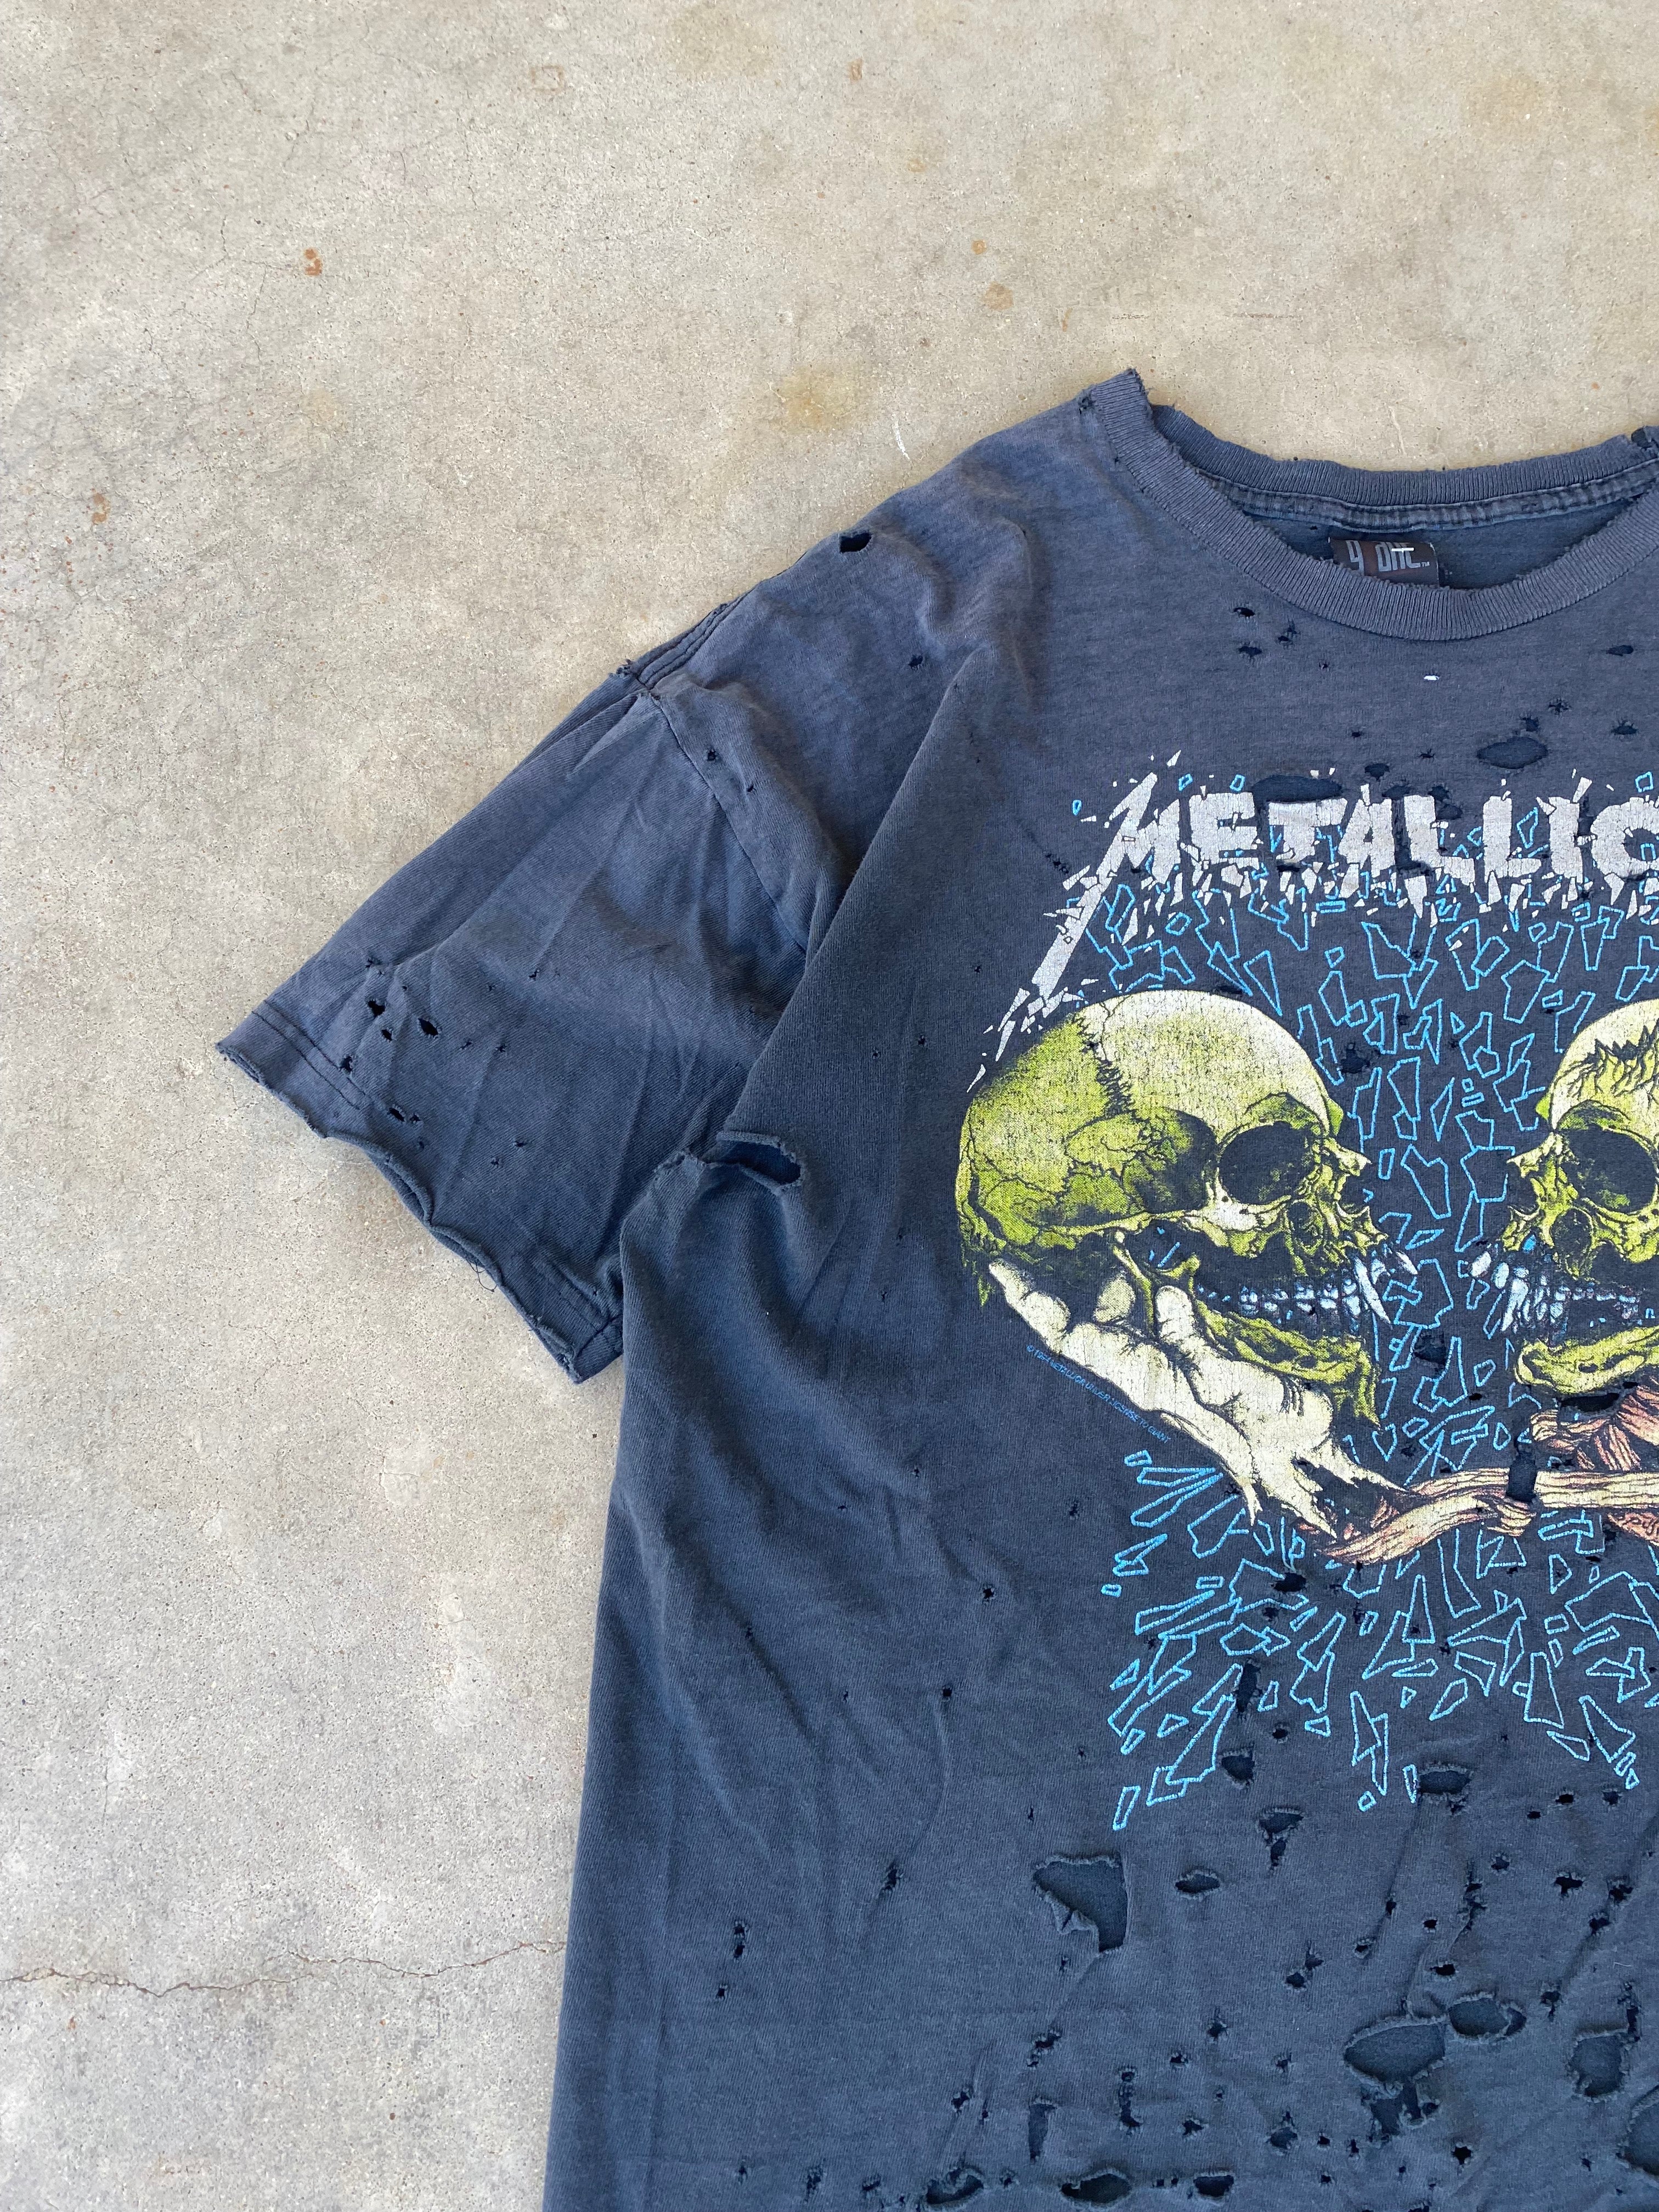 1994 Metallica "Sad but True" Distressed T-Shirt (XL)